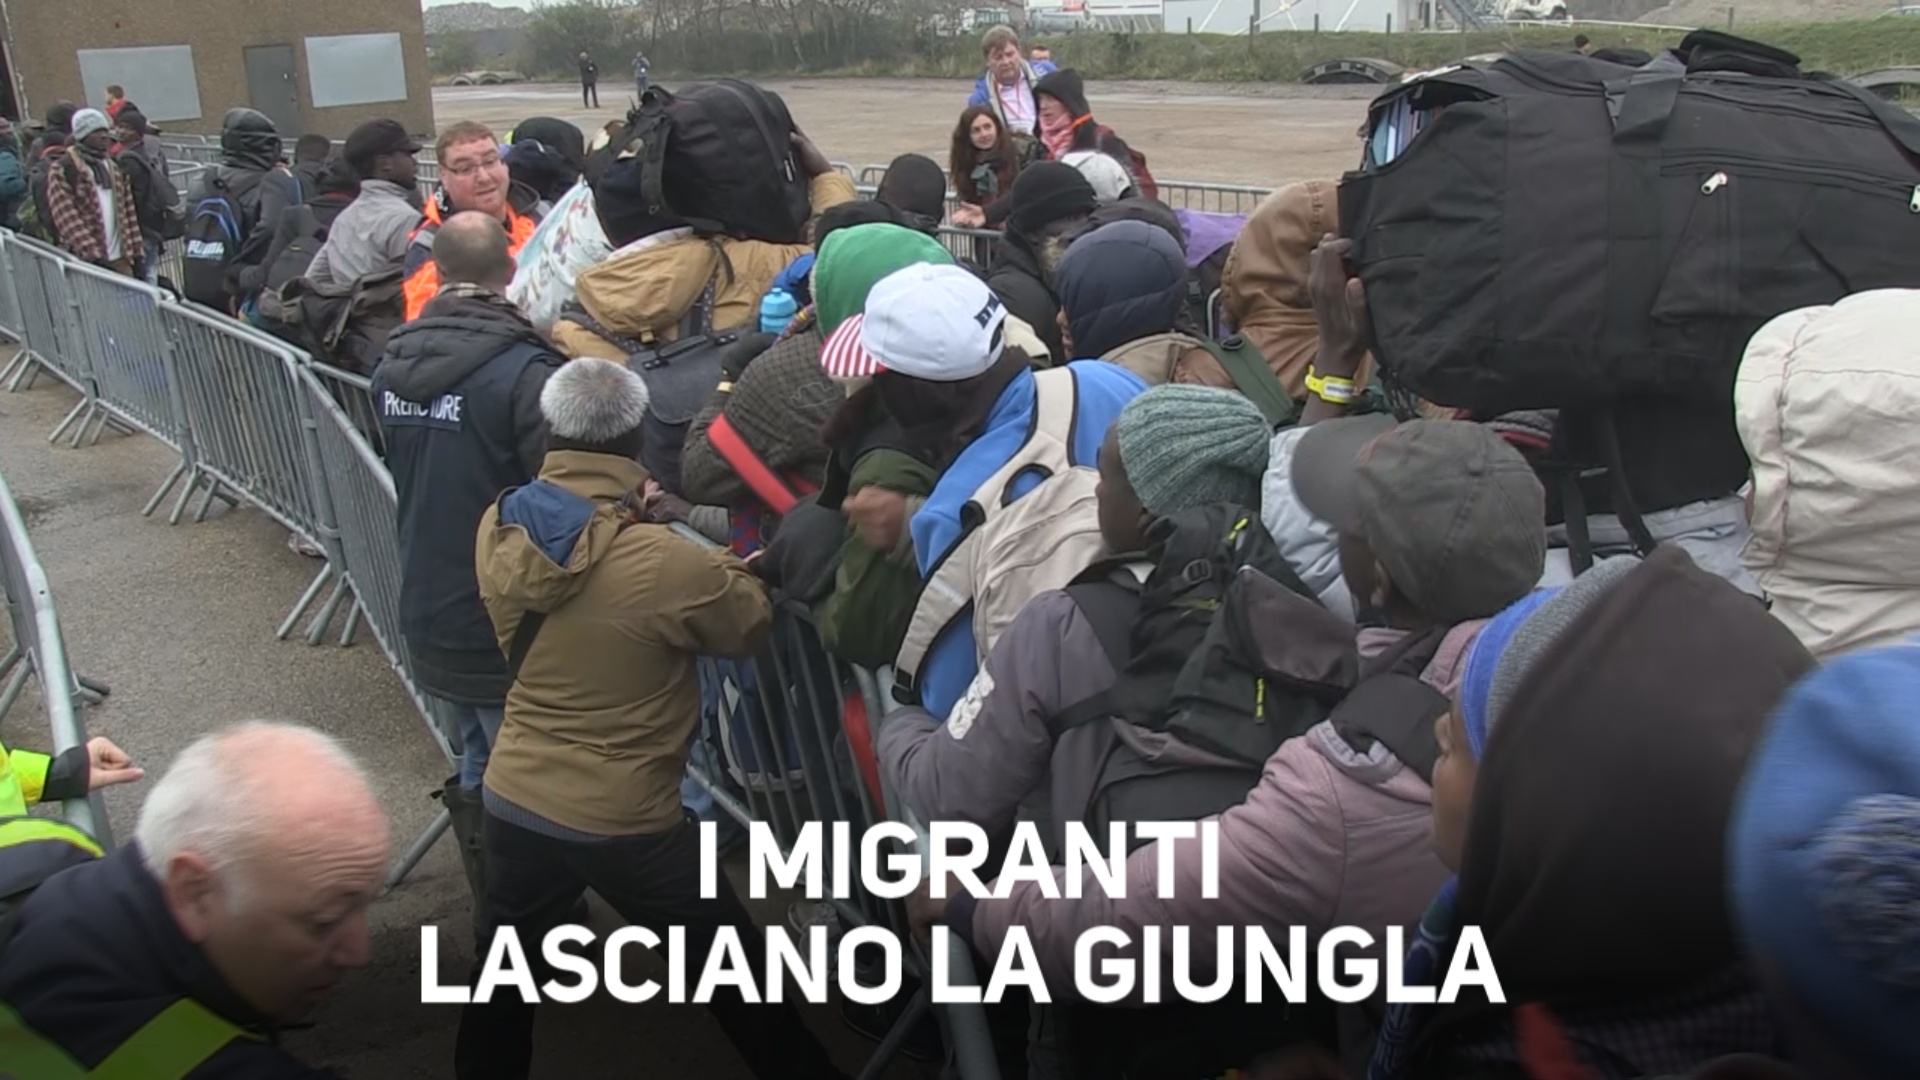 Chiude la Giungla di Calais, 6400 i migranti trasferiti